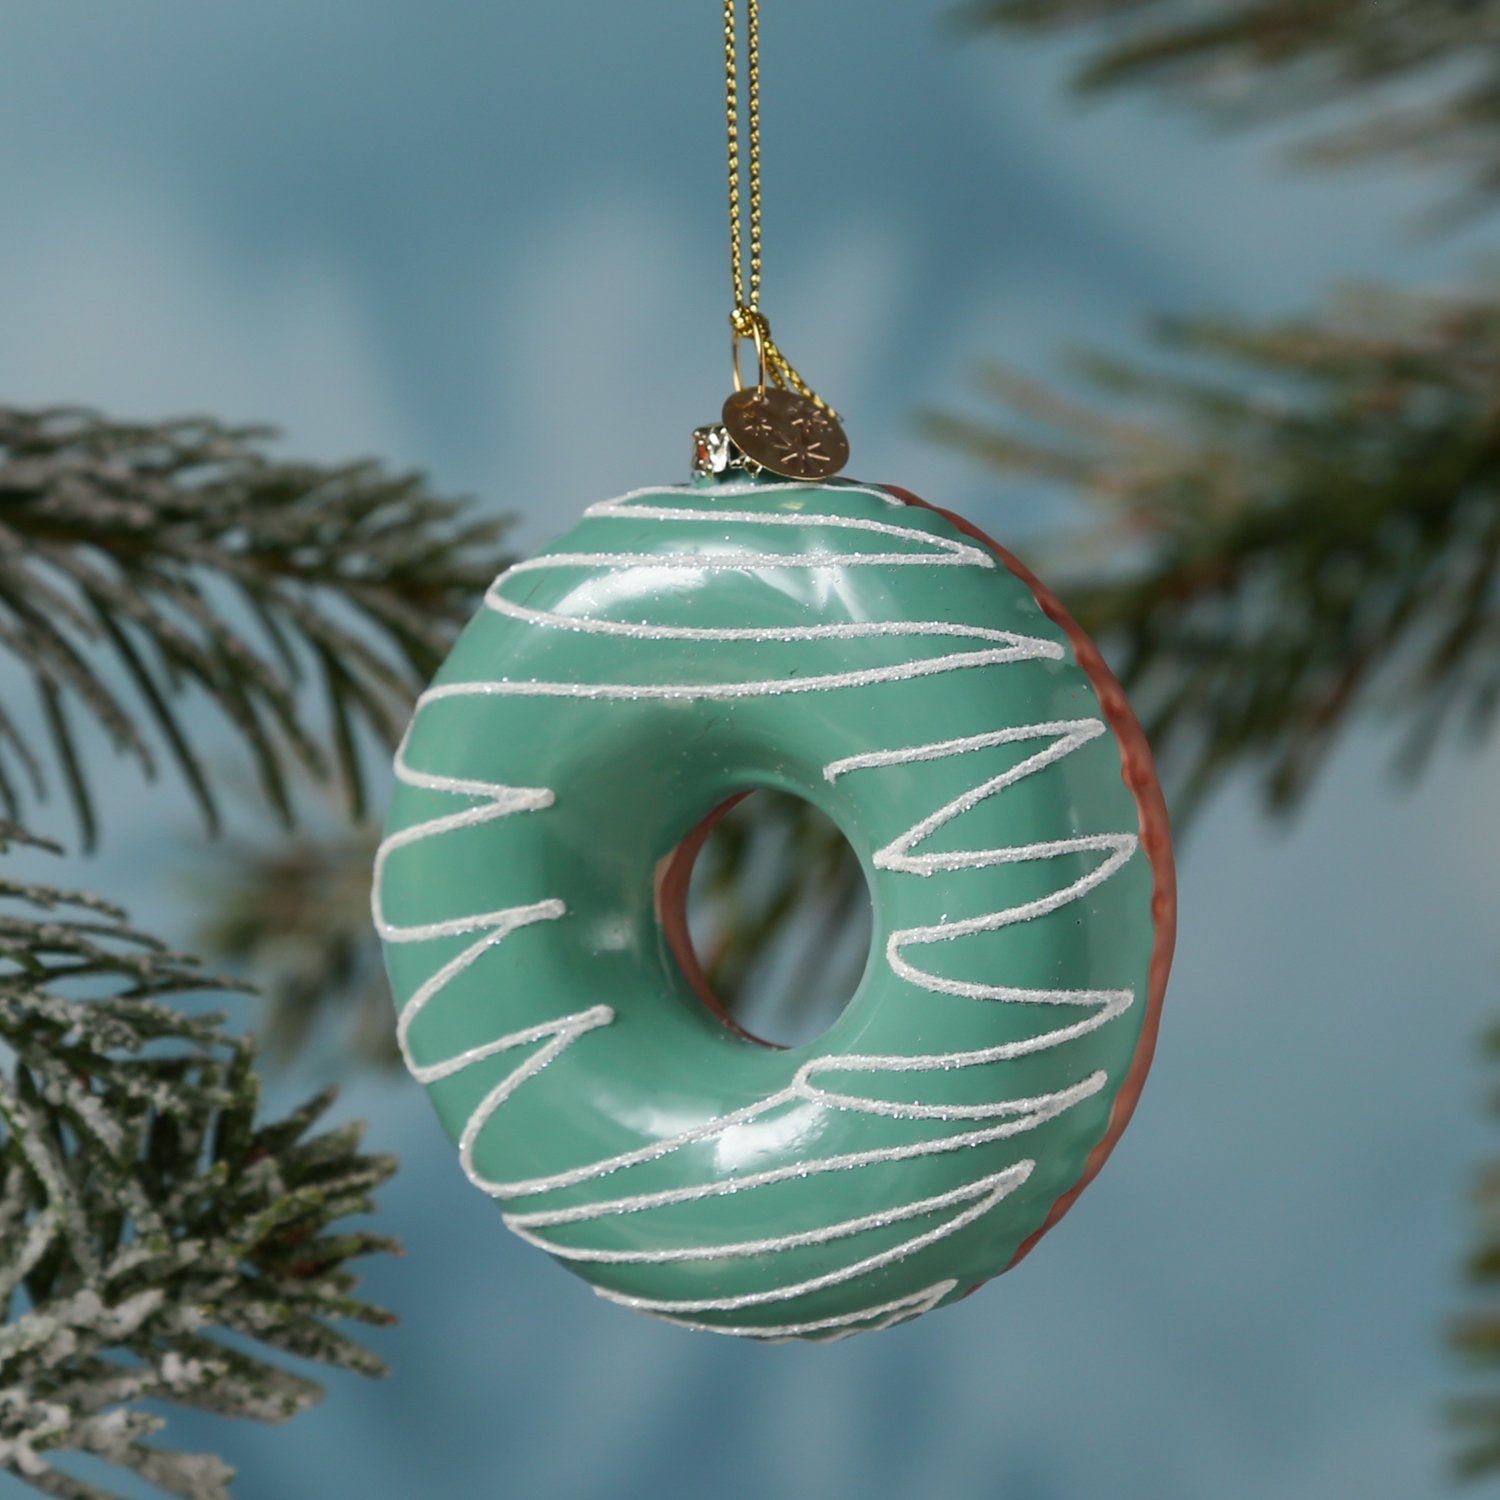 MARELIDA Christbaumschmuck Weihnachtsbaumschmuck Glas Donut mit bunten Streuseln H: 8,5cm blau